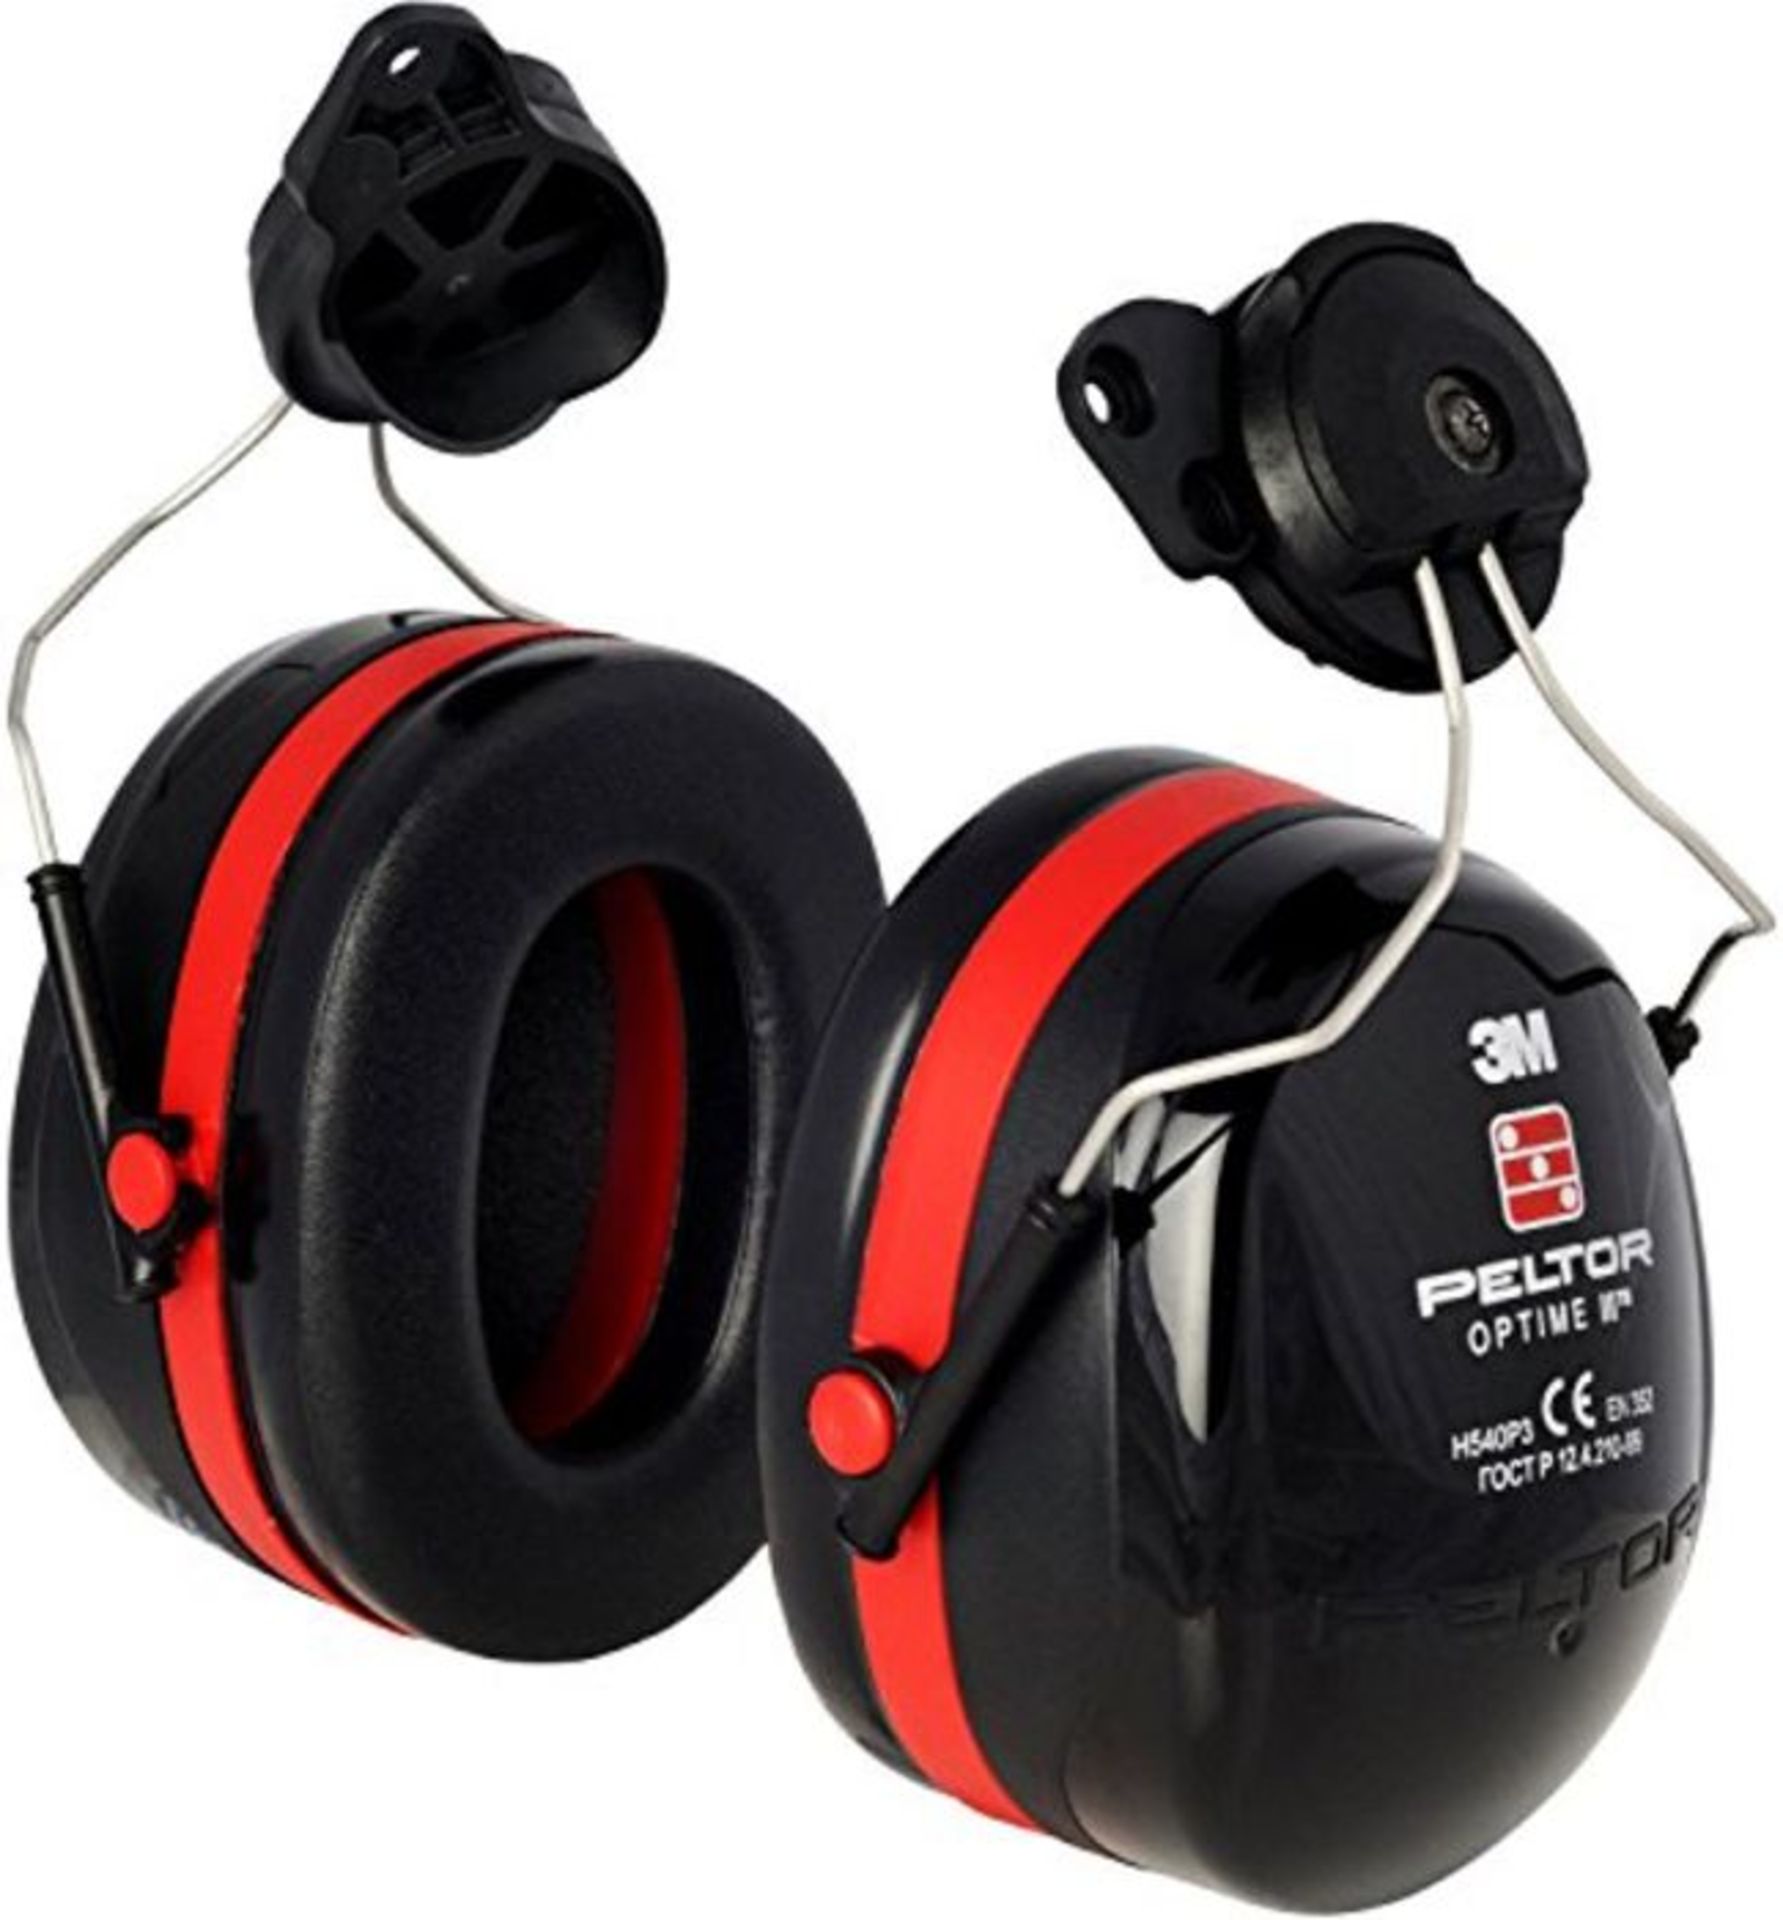 3M PELTOR Optime III Earmuffs, 34 dB, Black/Red, Helmet Mounted, H540P3EA-413-SV